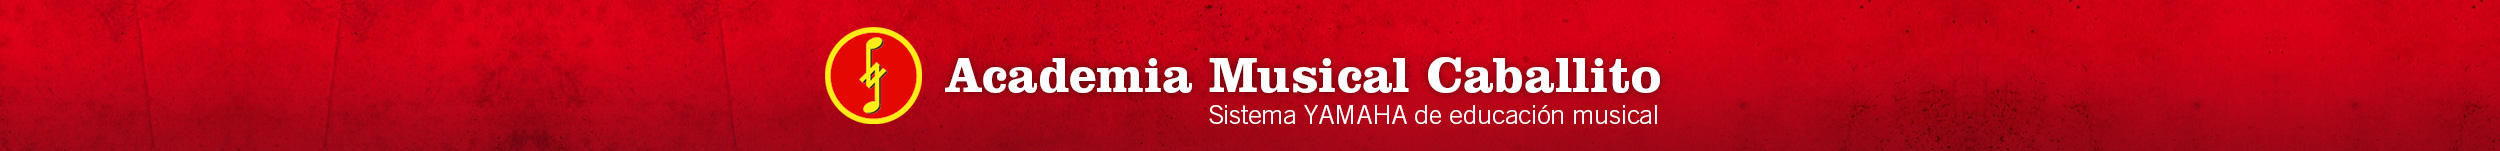 Academia Musical Caballito